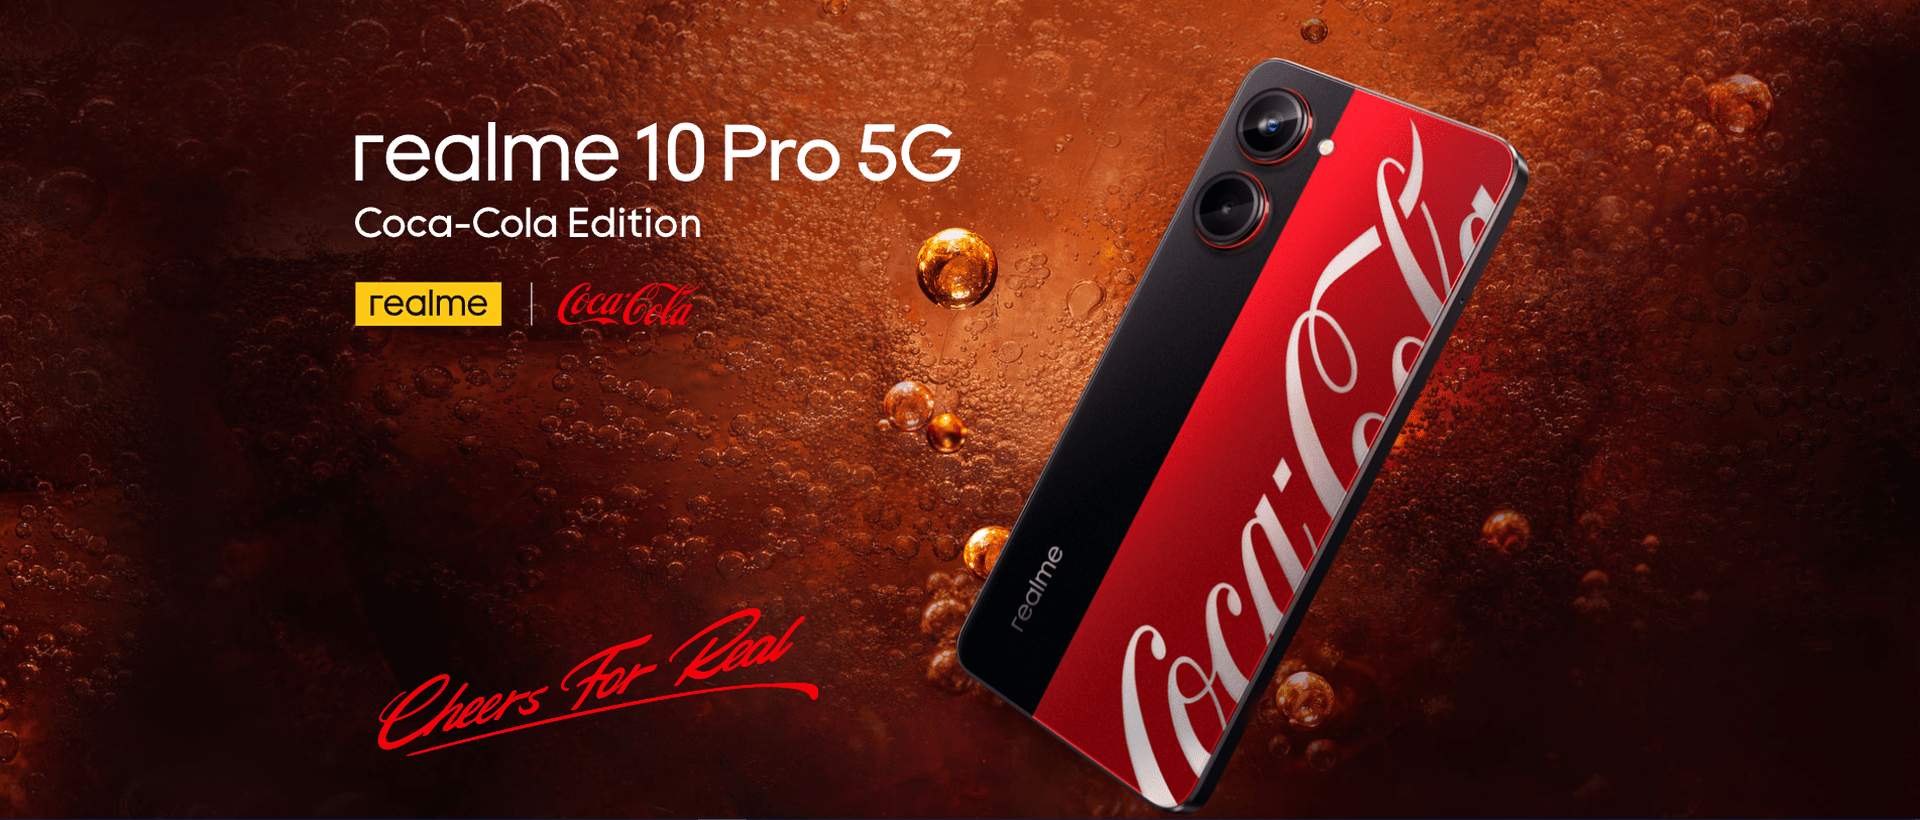 De nieuwe Realme 10 Pro met Coca-Cola-thema zal op 14 februari om 12:00 uur te koop zijn